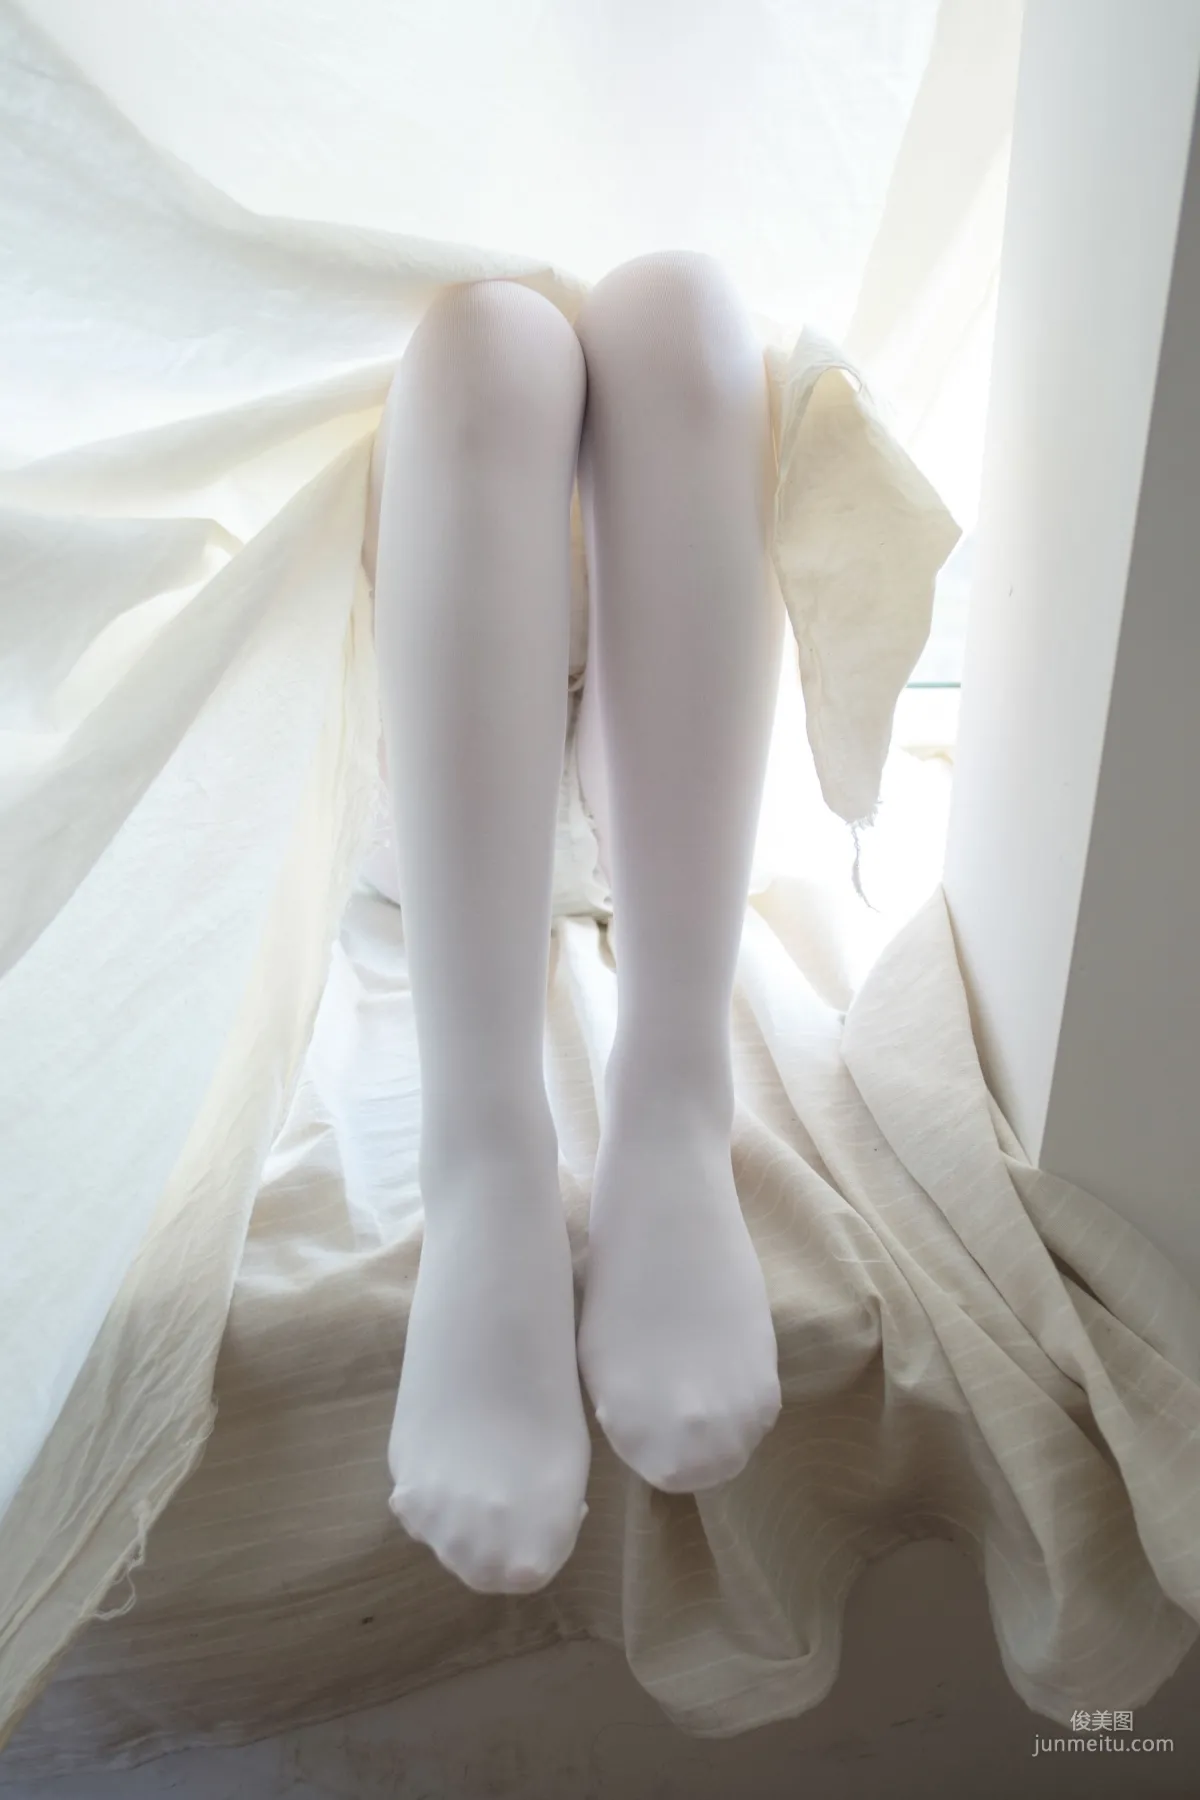 《窗台上的白丝少女》 [森萝财团] R15-018 写真集66